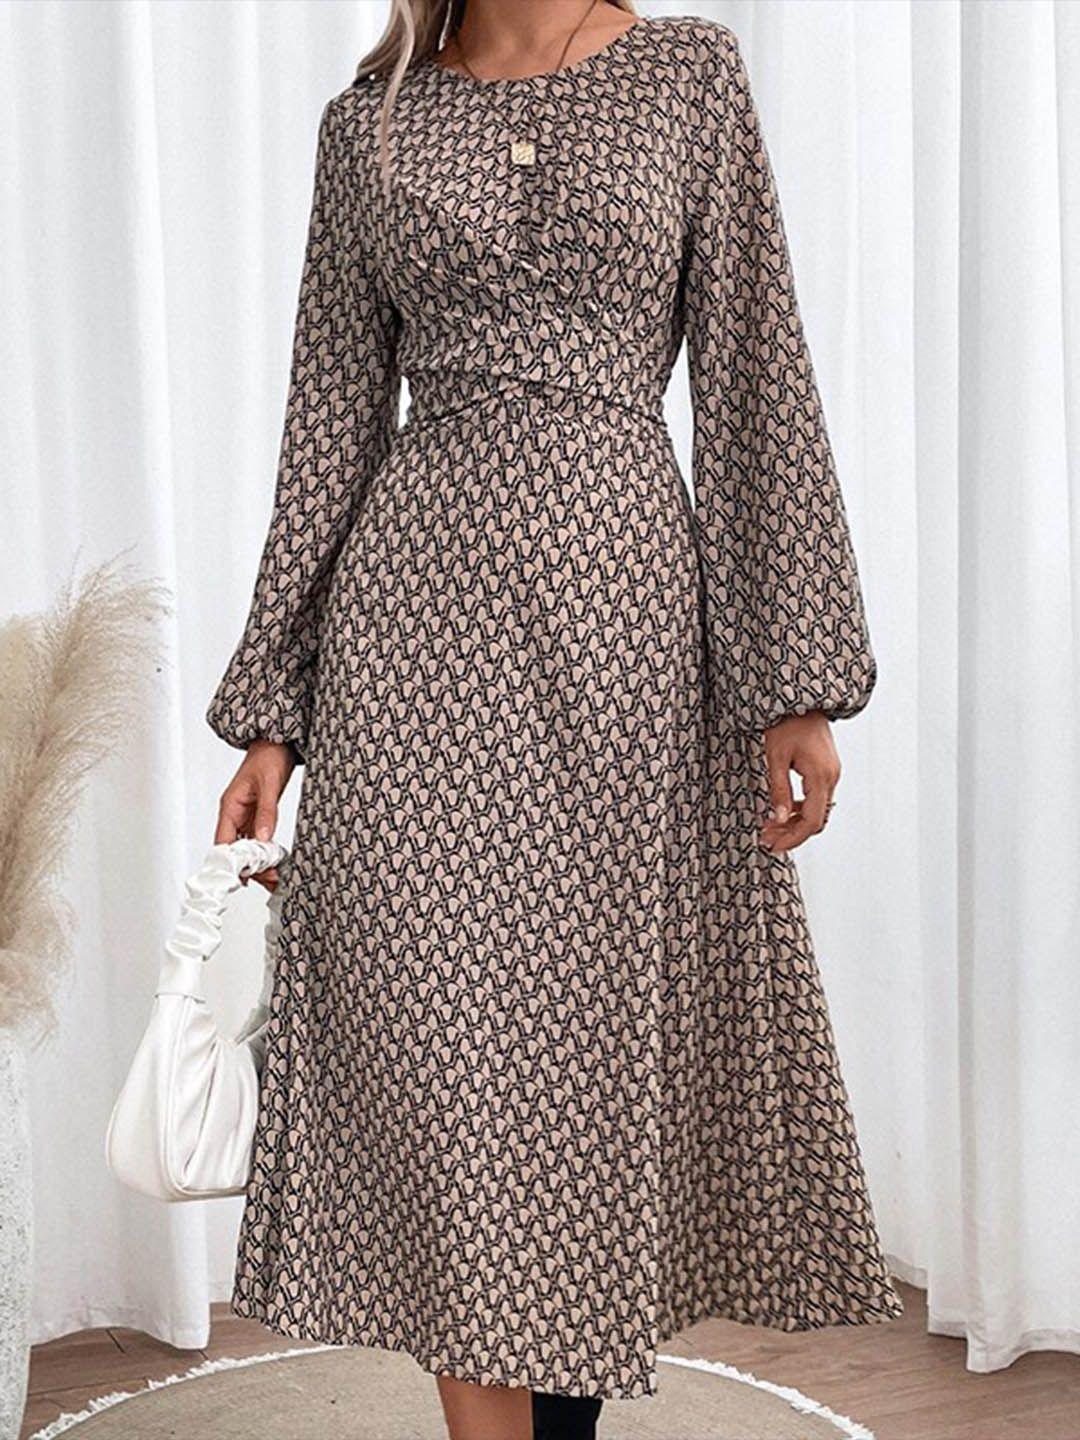 stylecast khaki & walnut print fit & flare midi dress